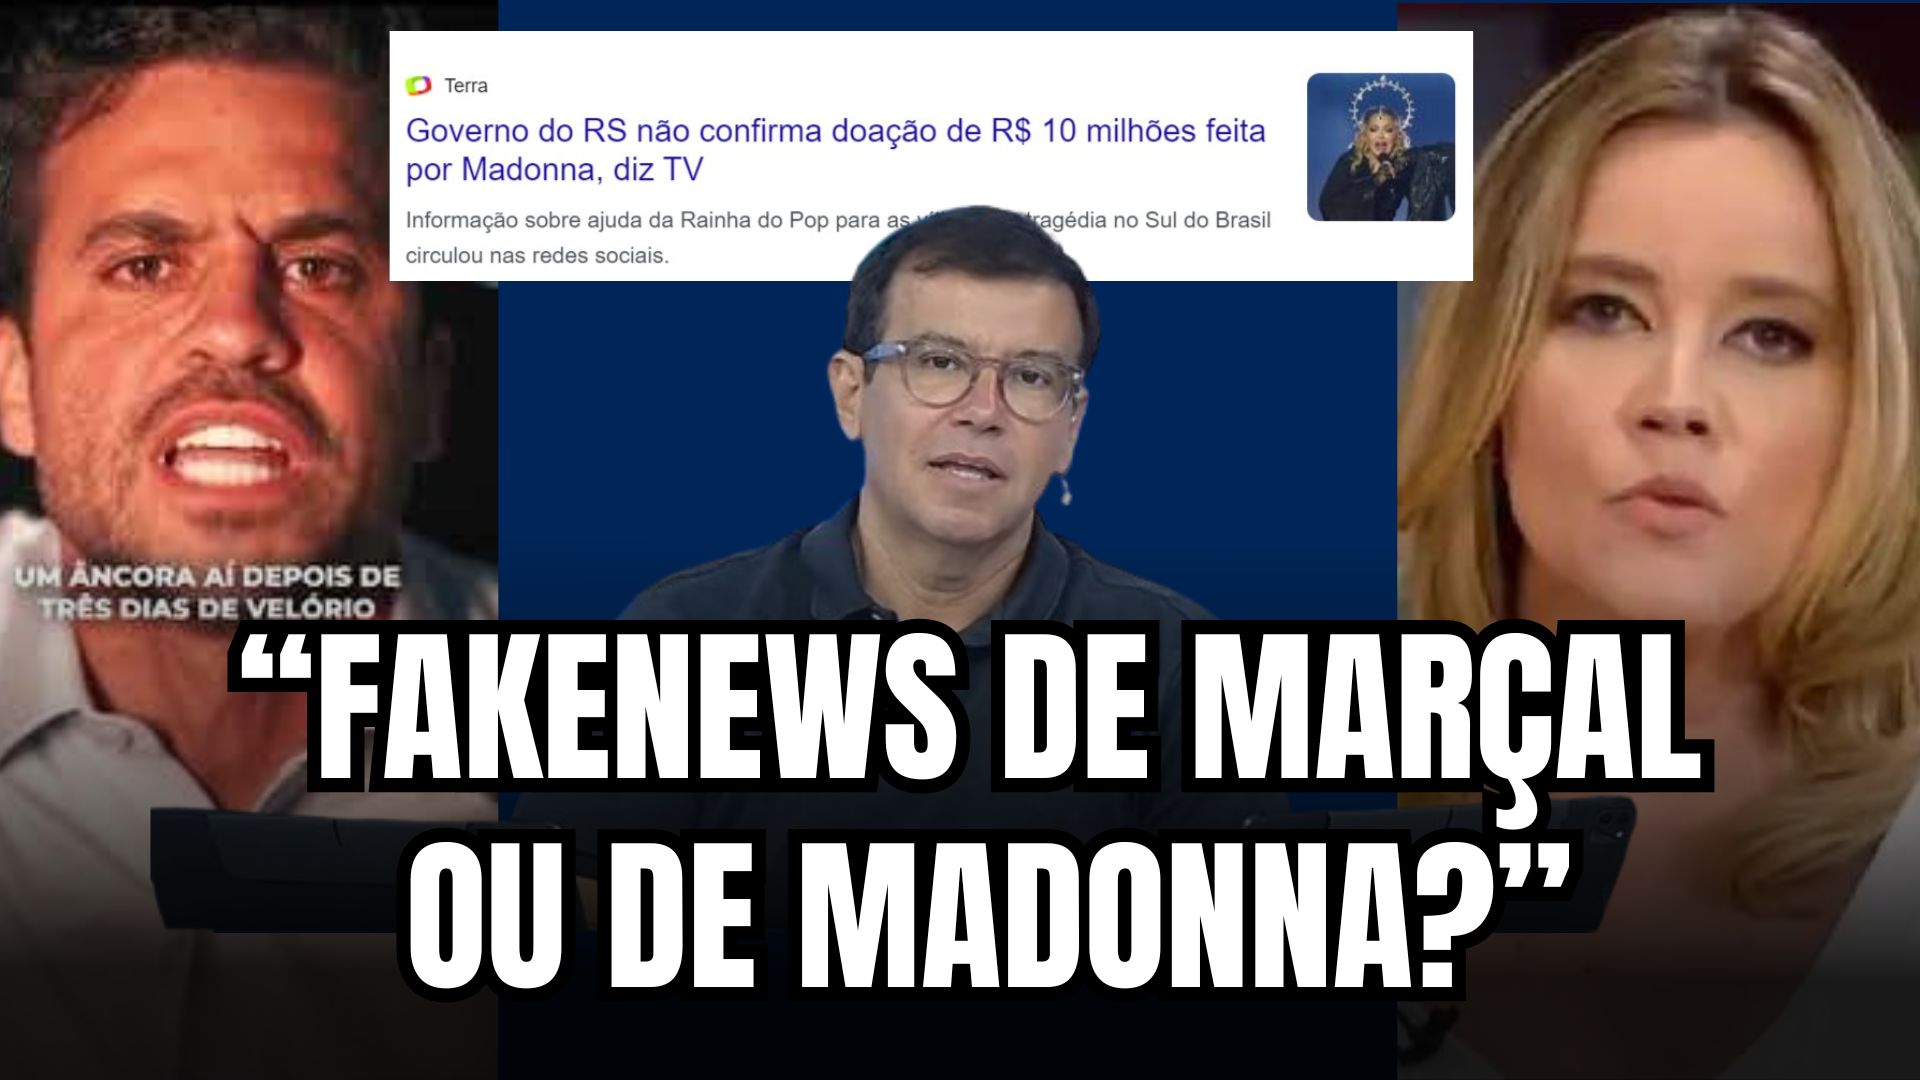 [VIDEO] Opinião: Por que acusaram Maçal de fakenews mas ninguém falou do fake de Madonna? 